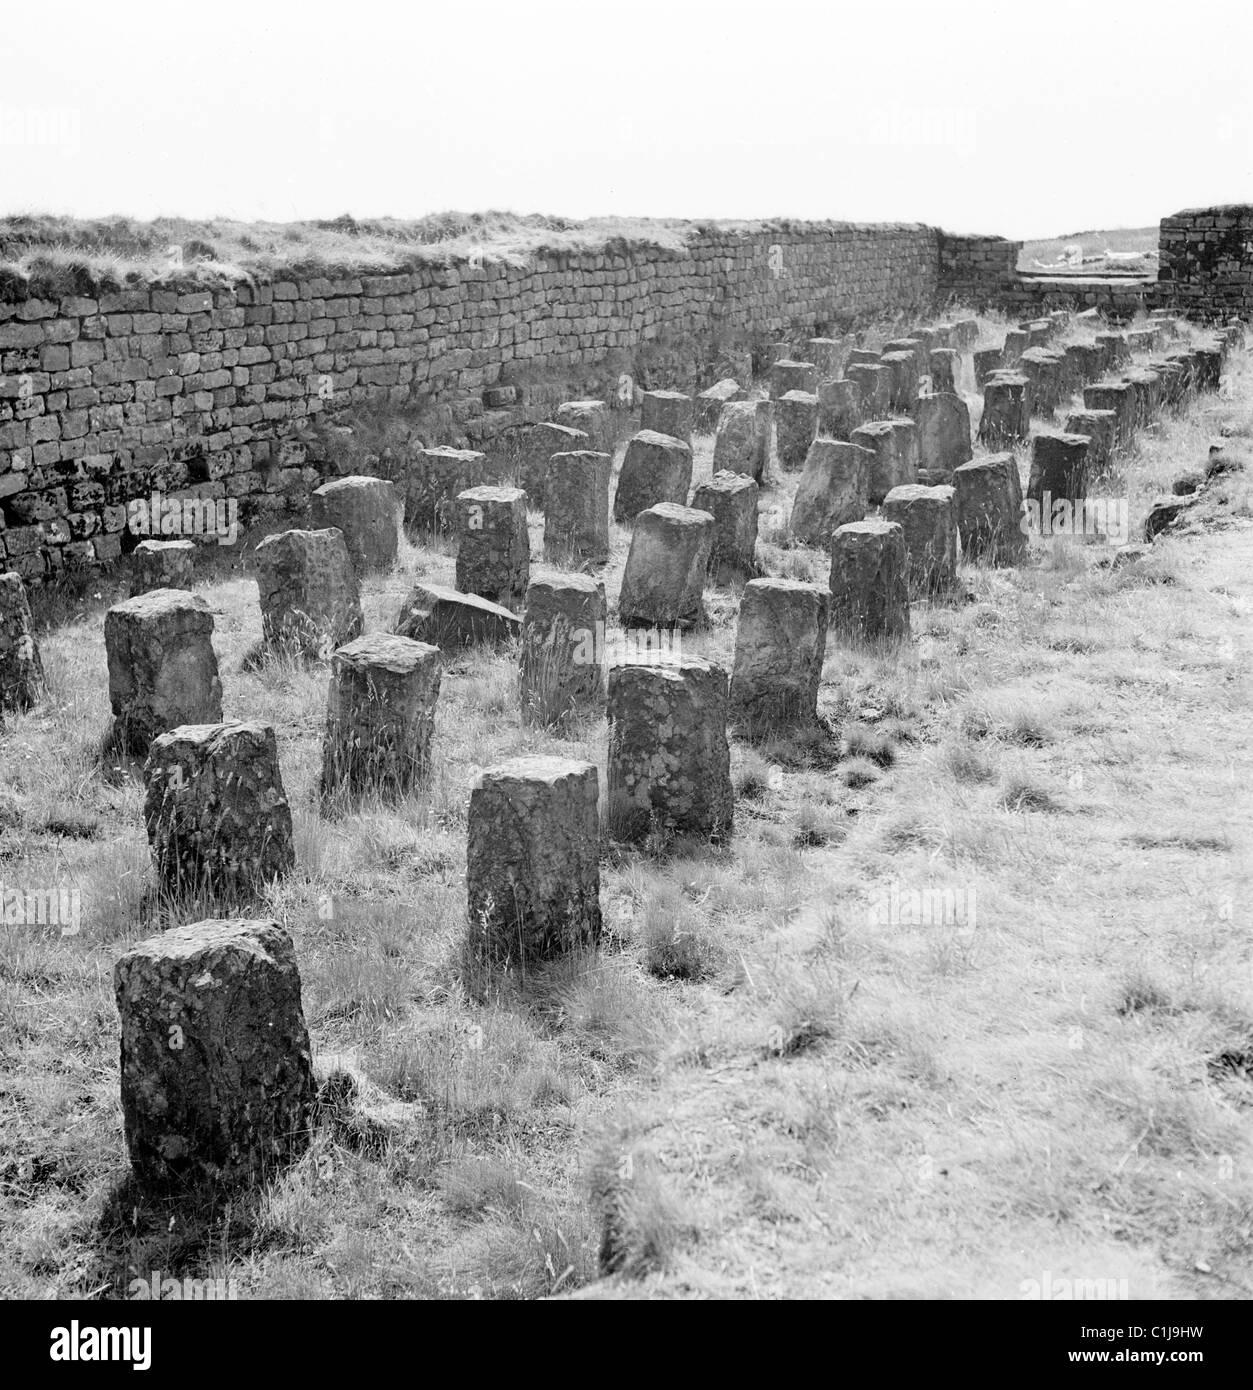 1950er Jahre, historische, kleine Grabsteine in Reihen neben einer Steinmauer auf einem alten Landfriedhof, England, Großbritannien. Stockfoto